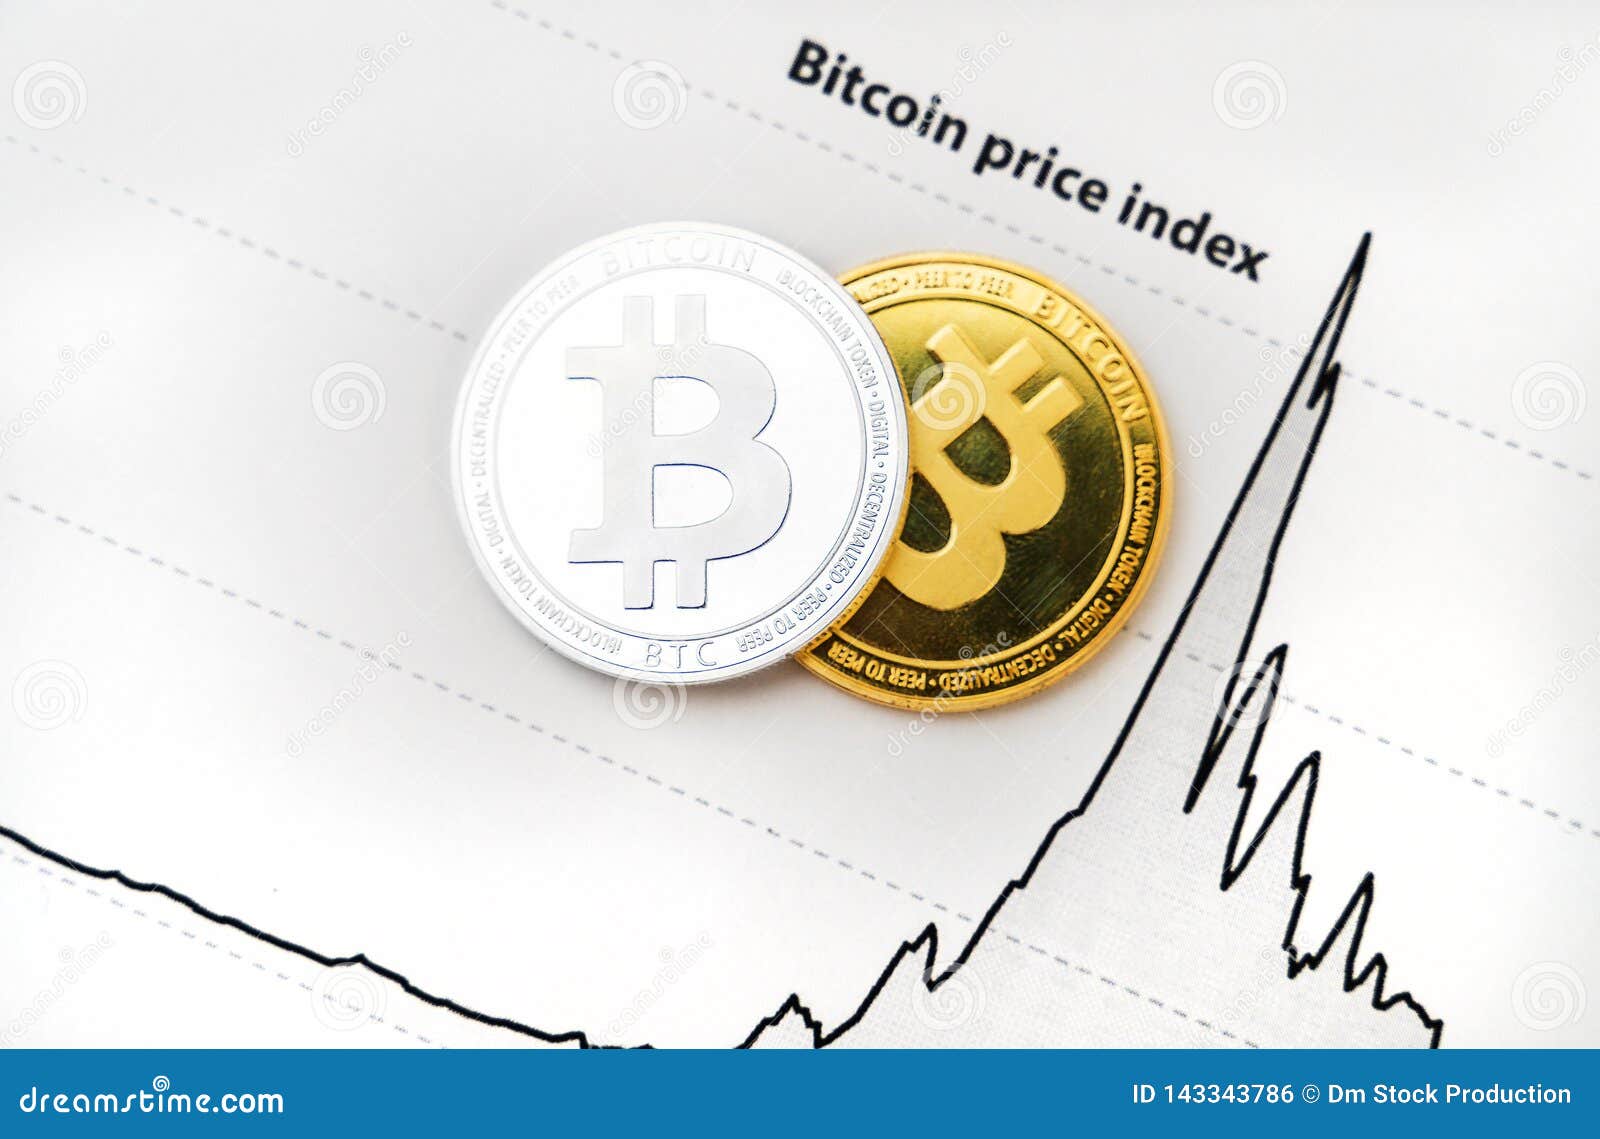 bitcoin index stock